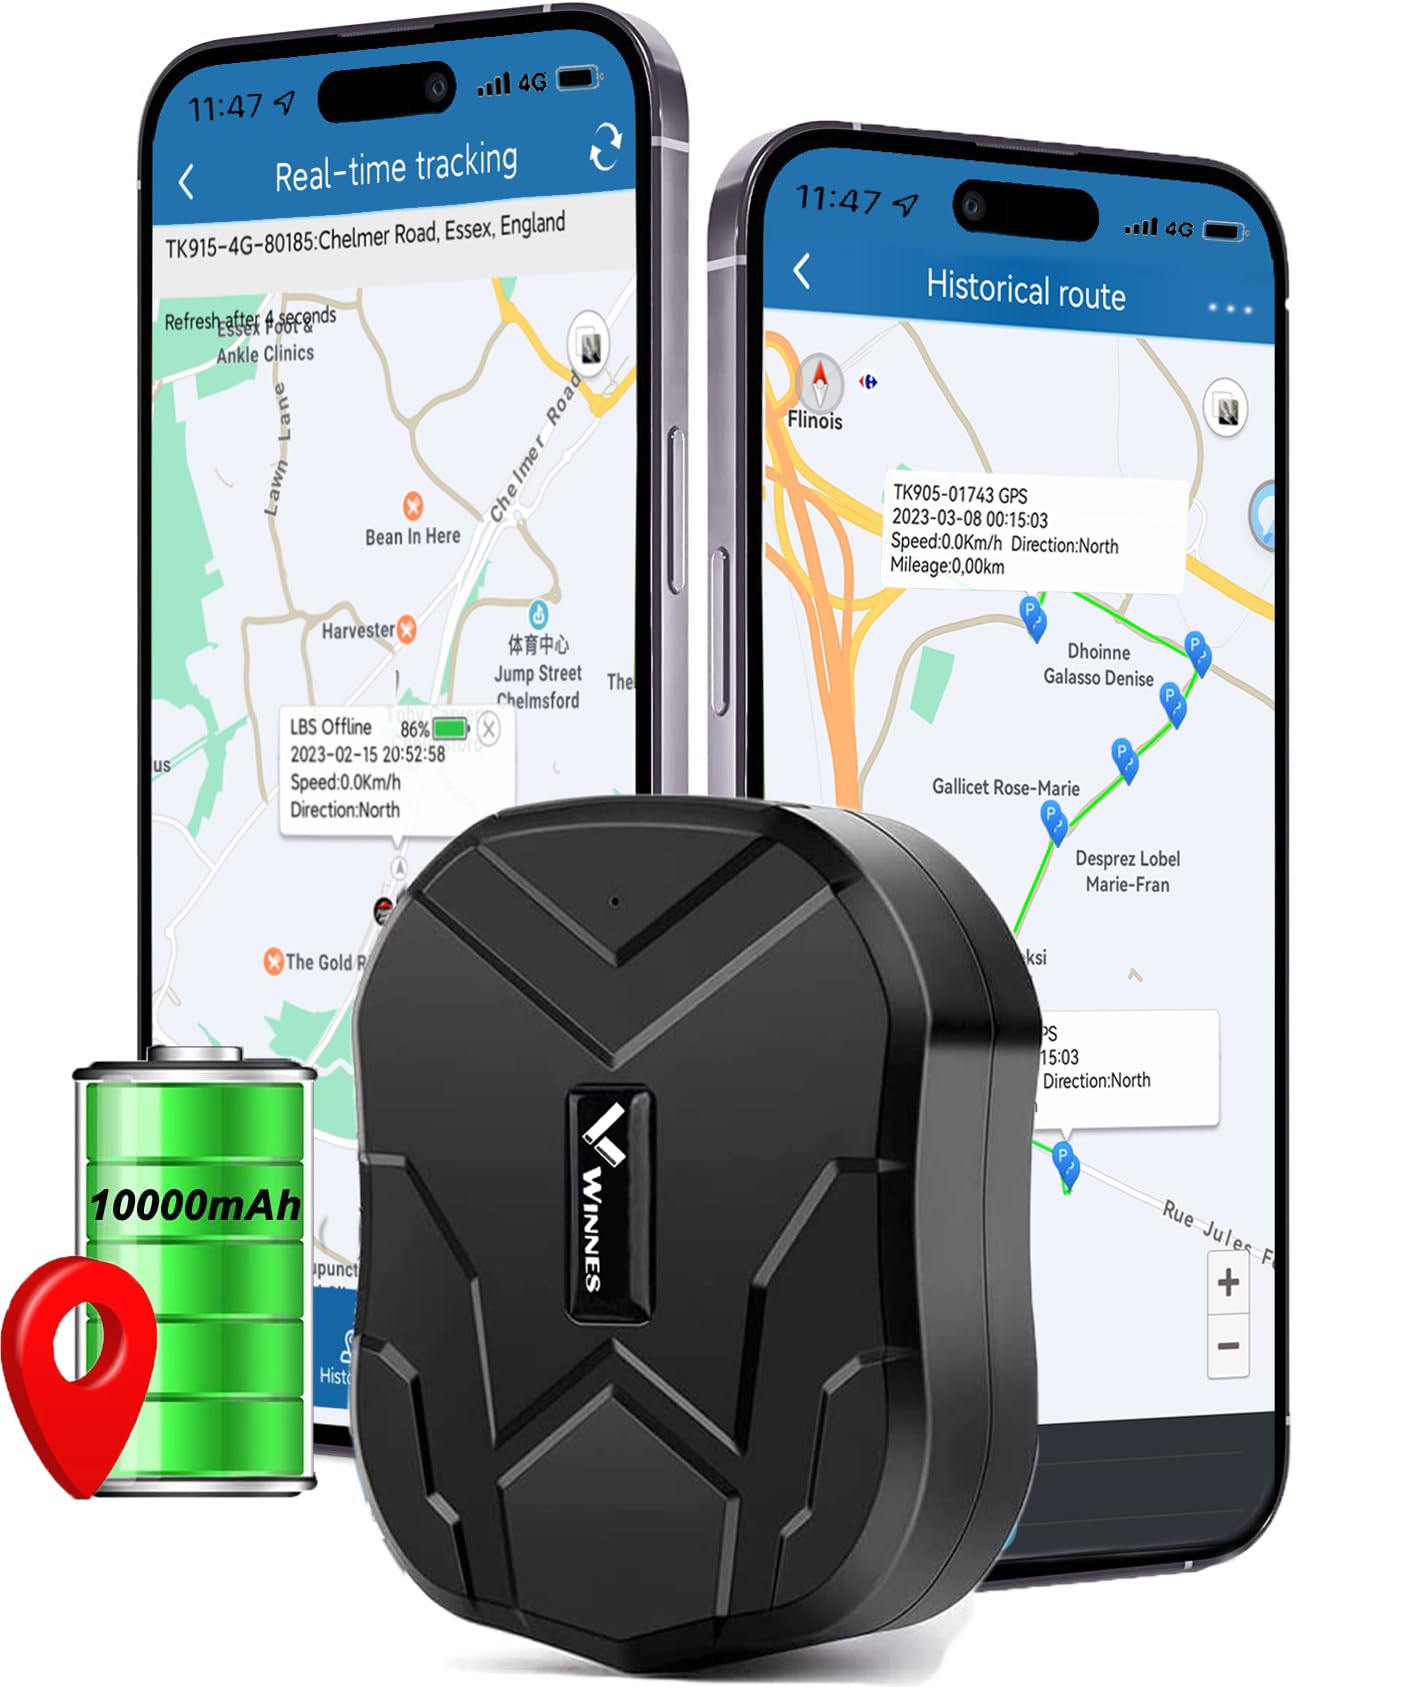 GPS Tracker Auto ohne ABO, 10000mAh GPS Tracker mit Starker Magnet, Langer Standby Echtzeit Positionierung GPS Tracker für Fahrzeug Auto Motorrad LKW mit kostenloser APP